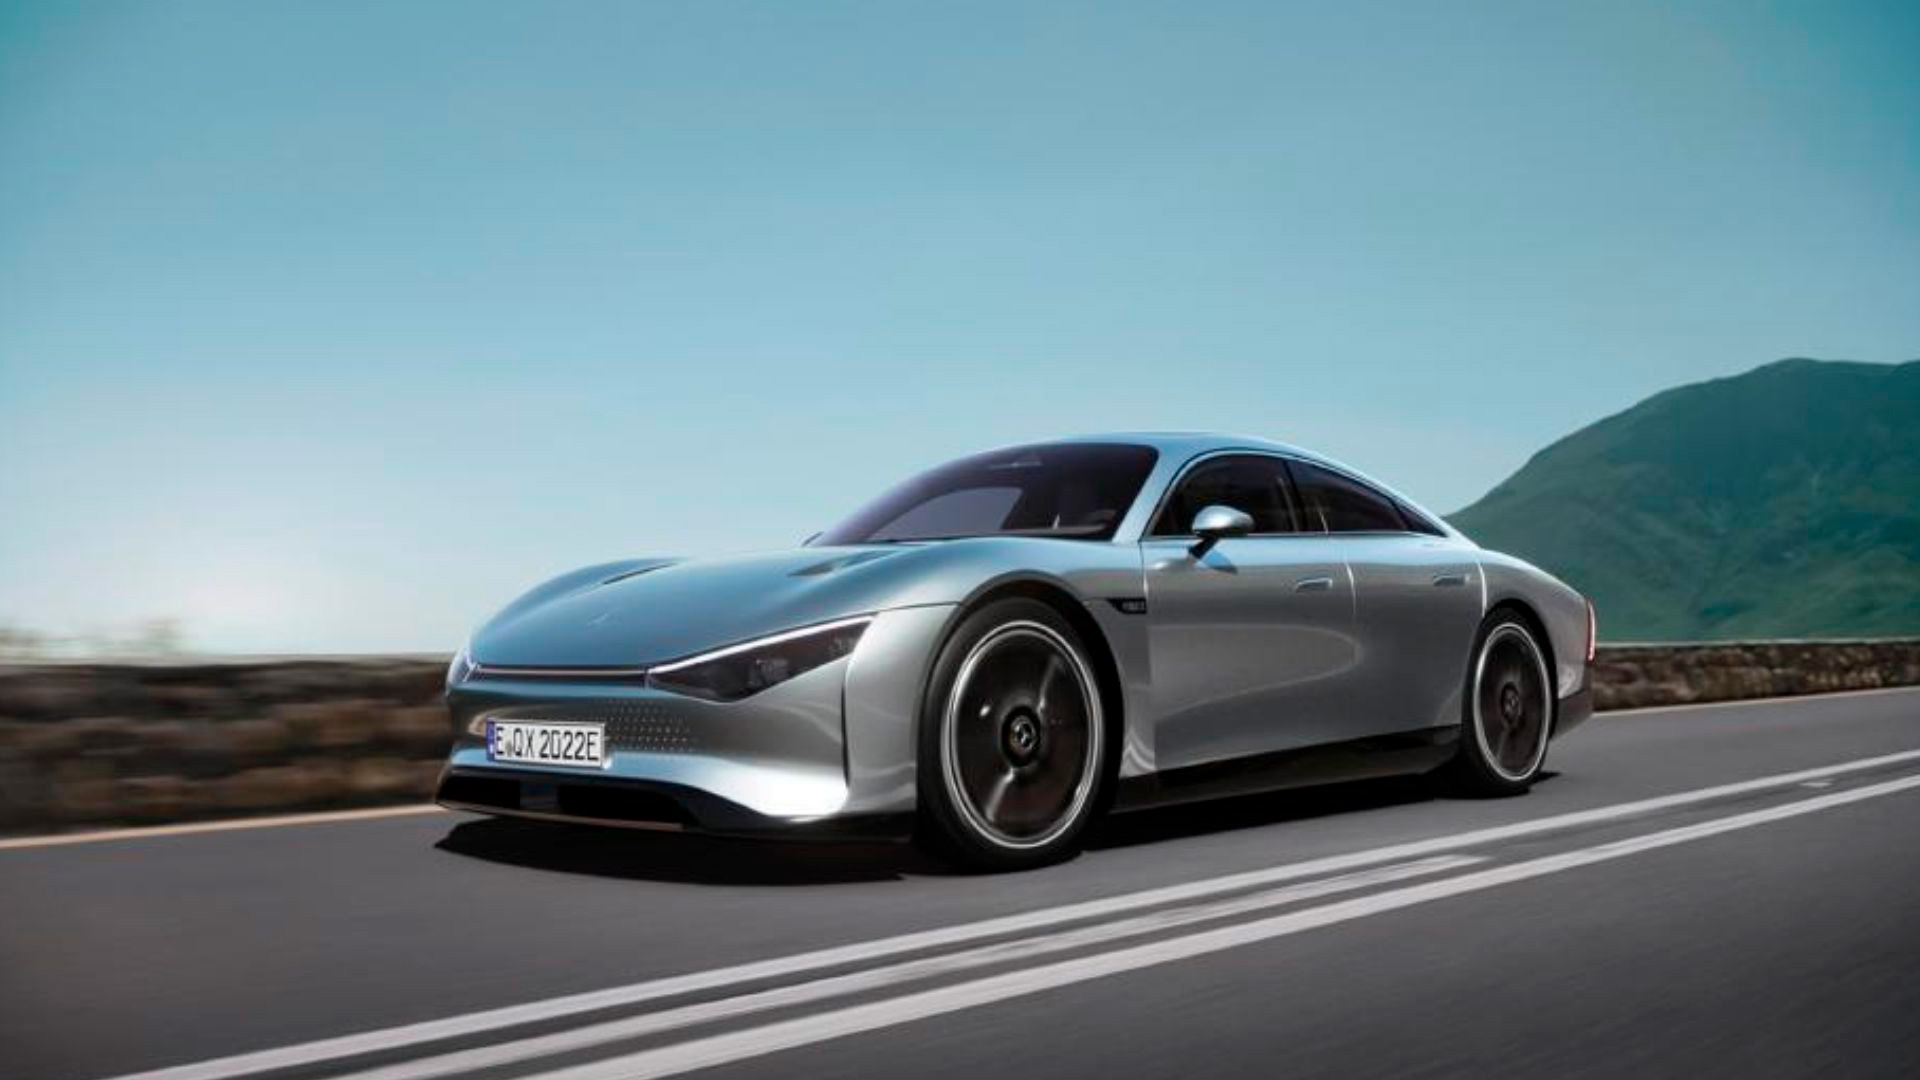 Si bien es un concept car aún, el Mercedes EQXX tiene paneles solares como extensores de autonomía